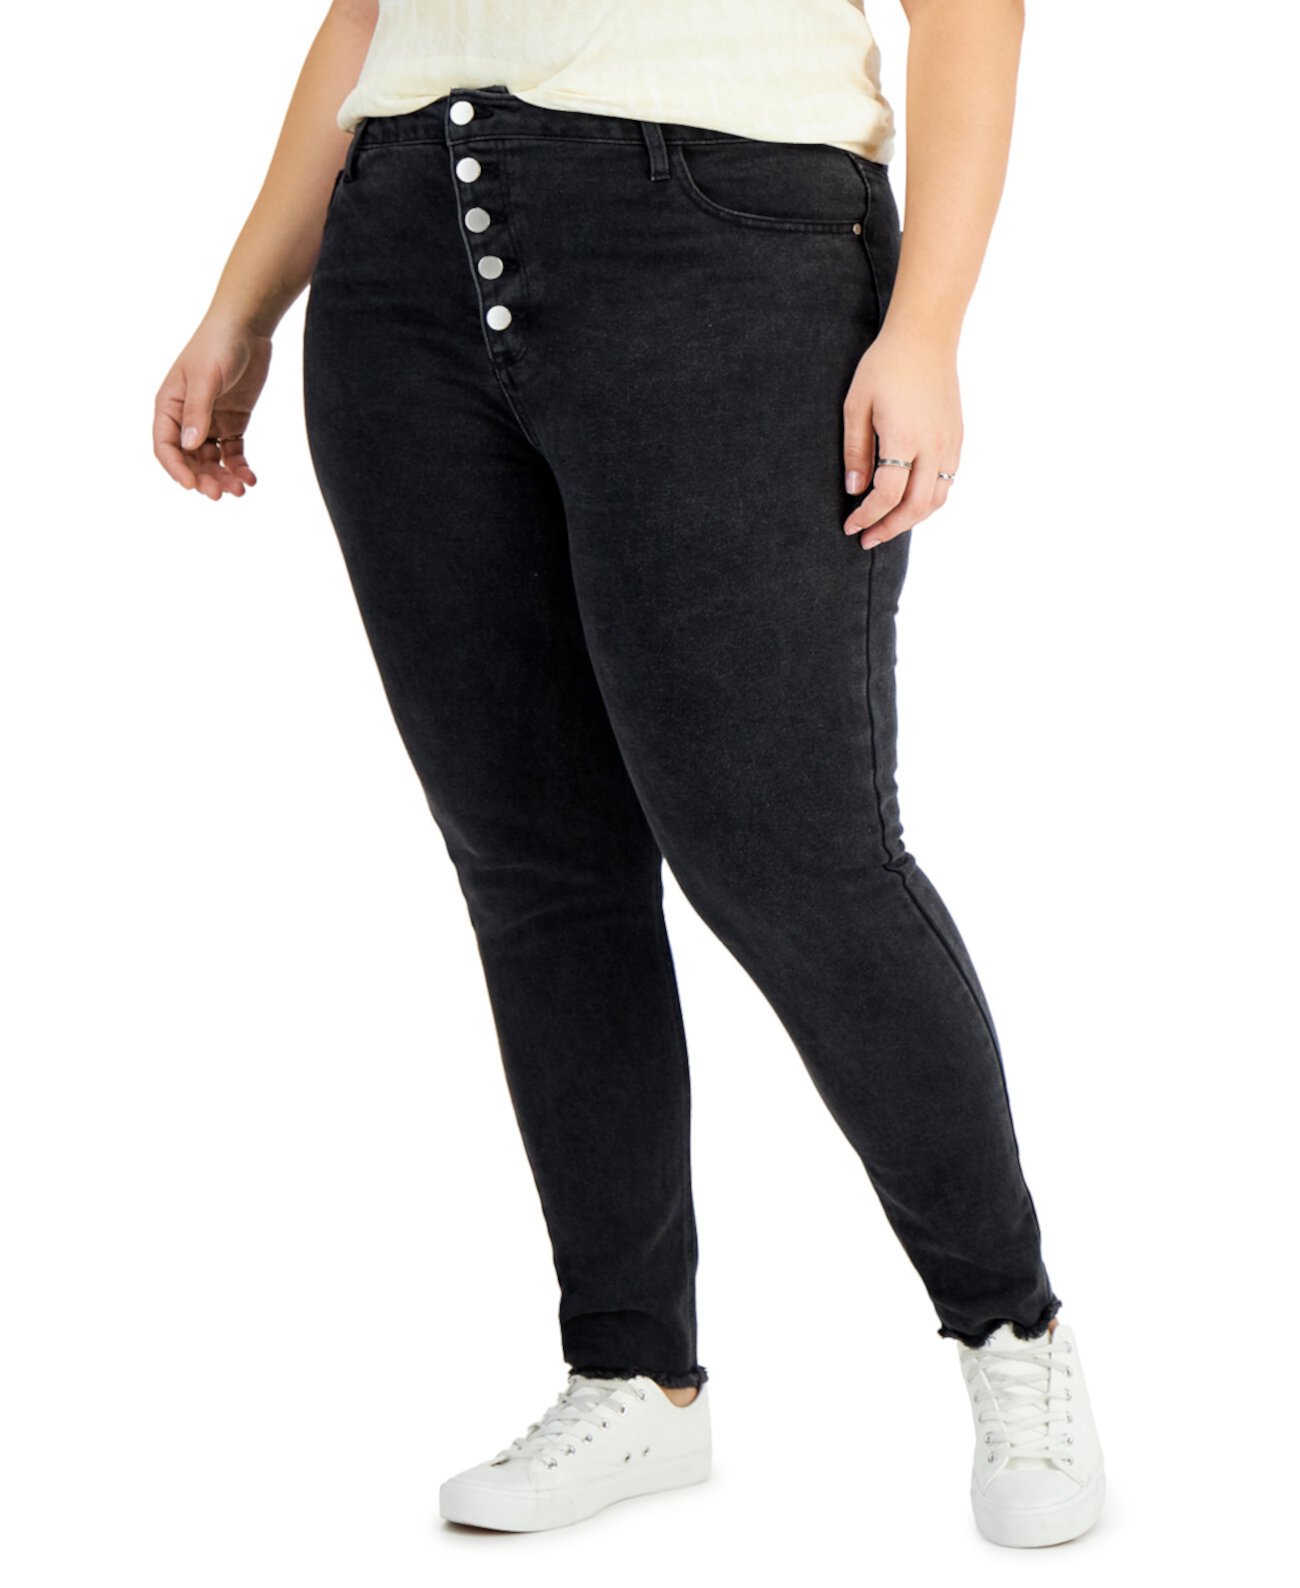 Модные джинсы для мам больших размеров Tinseltown